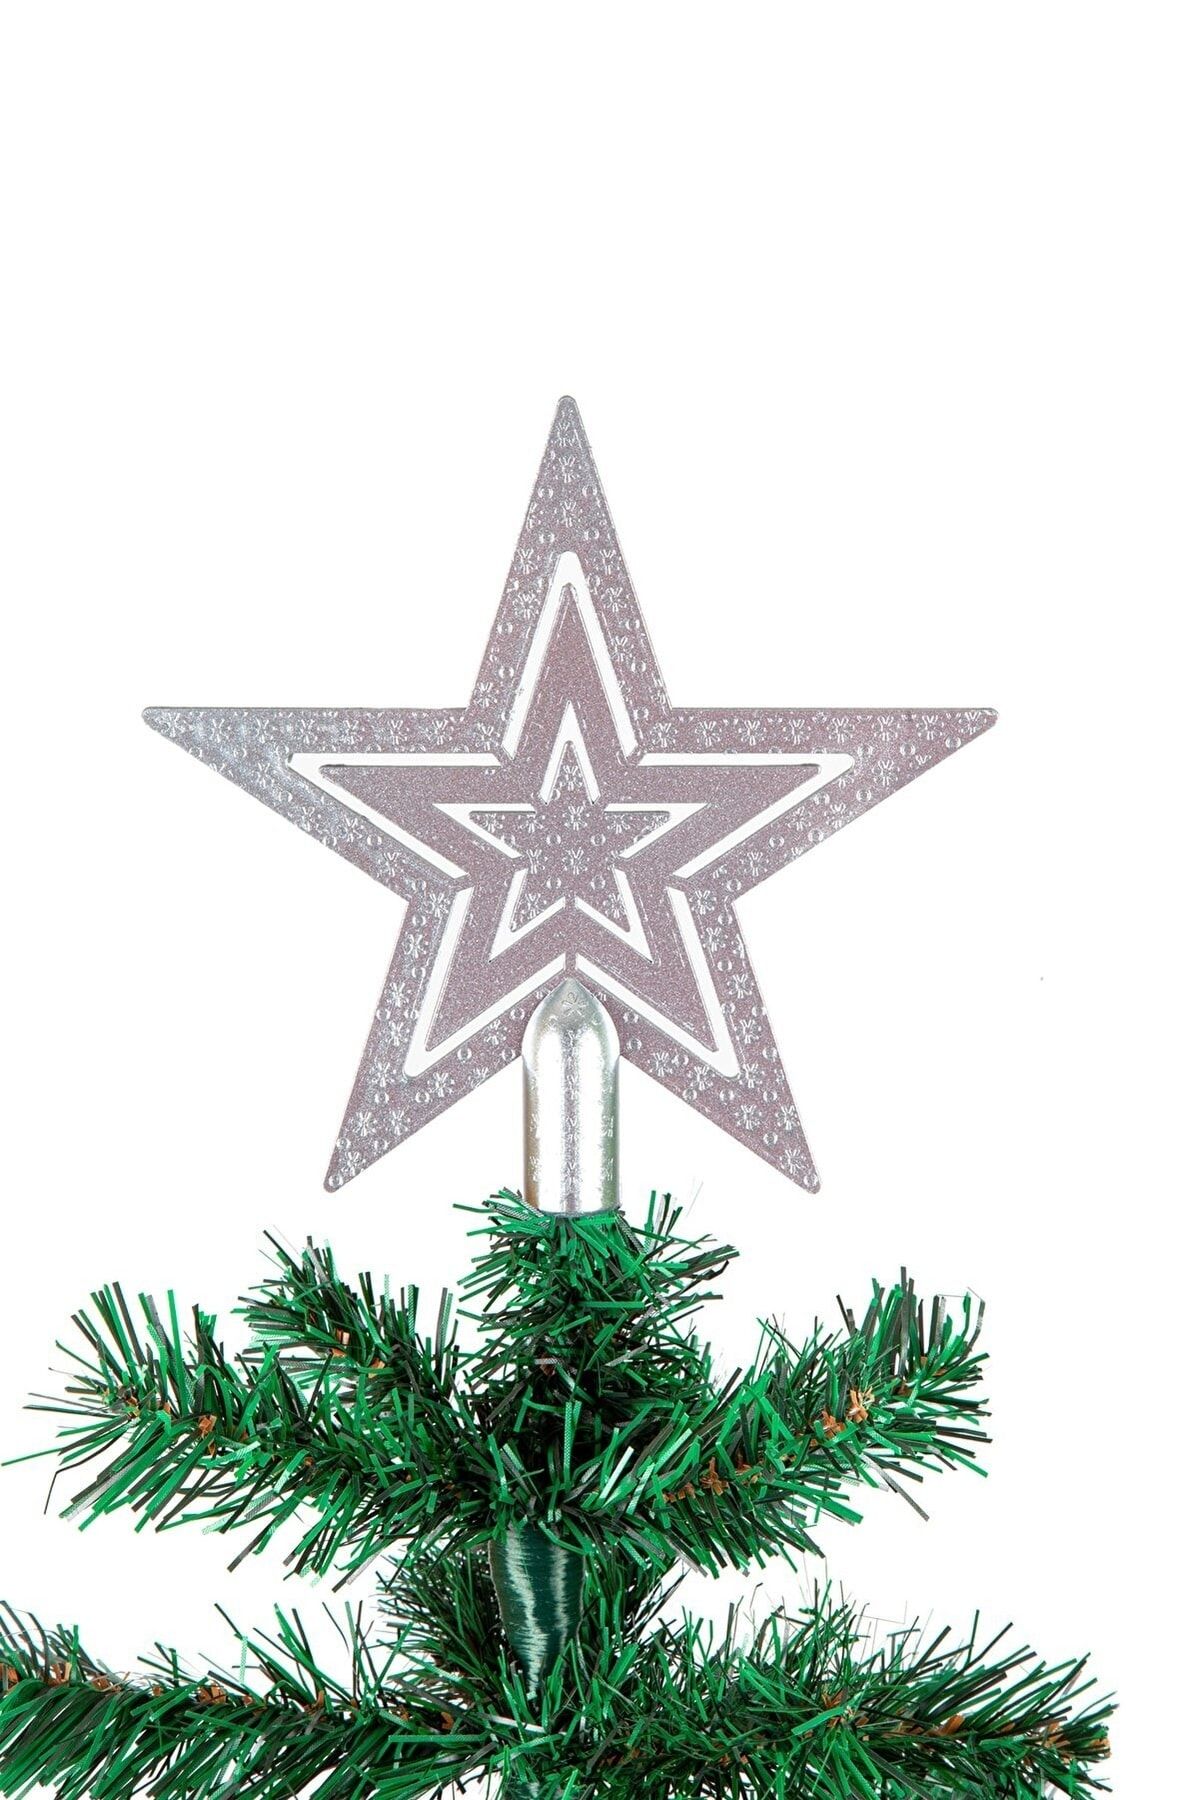 Happyland Yılbaşı Ağacı Süsü Gümüş 10 cm Yılbaşı Çam Ağacı Tepe Yıldızı